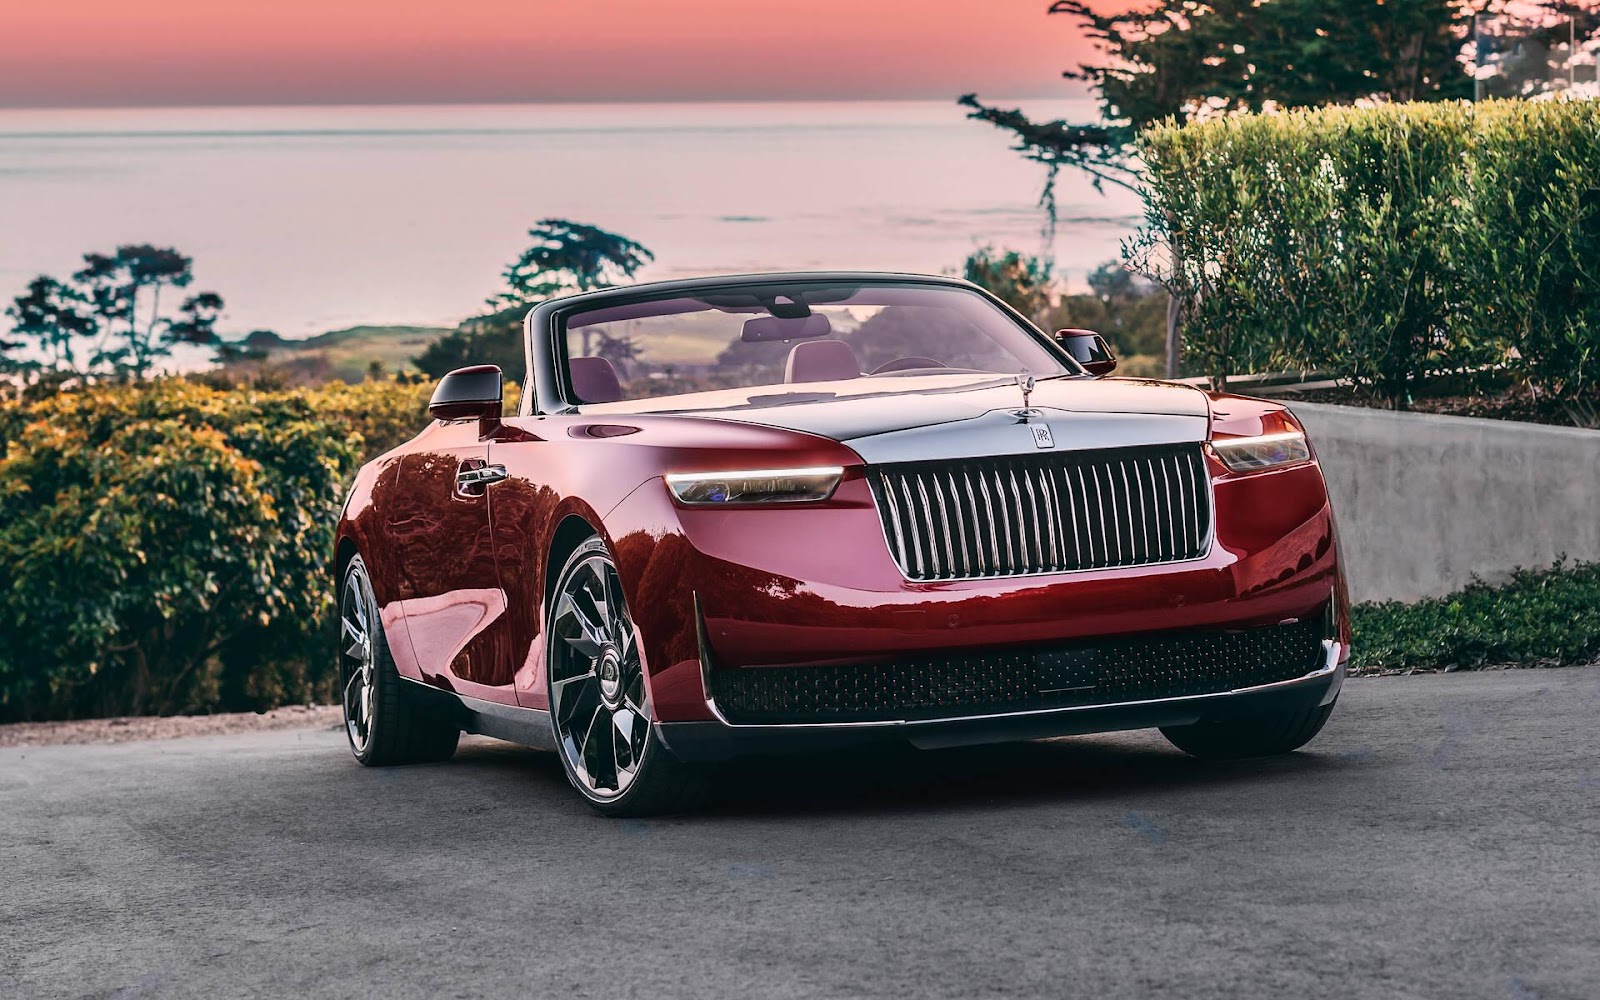 Siêu xe Rolls-Royce đắt nhất thế giới: trị giá tới 32 triệu USD, thiết kế độc nhất vô nhị lấy cảm hứng từ hoa hồng, chủ nhân là nhân vật tầm cỡ, nhưng giấu mặt - Ảnh 1.